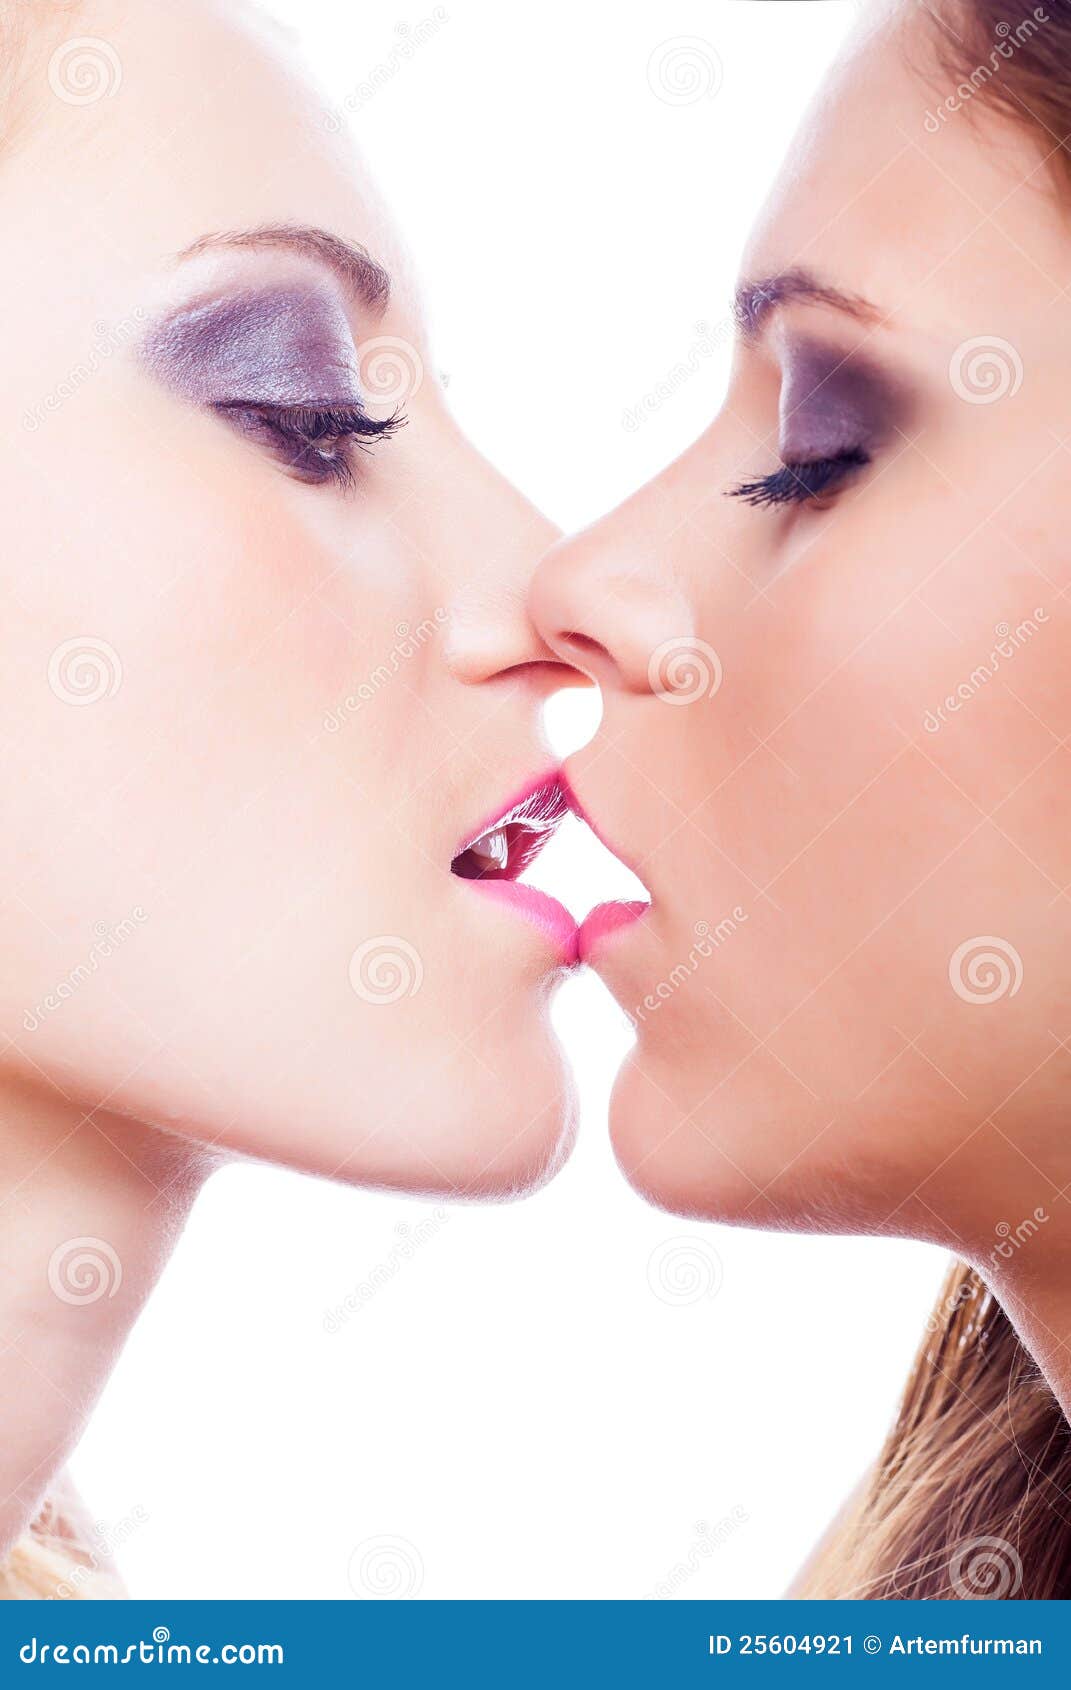 лесби целуются в губы фото 108